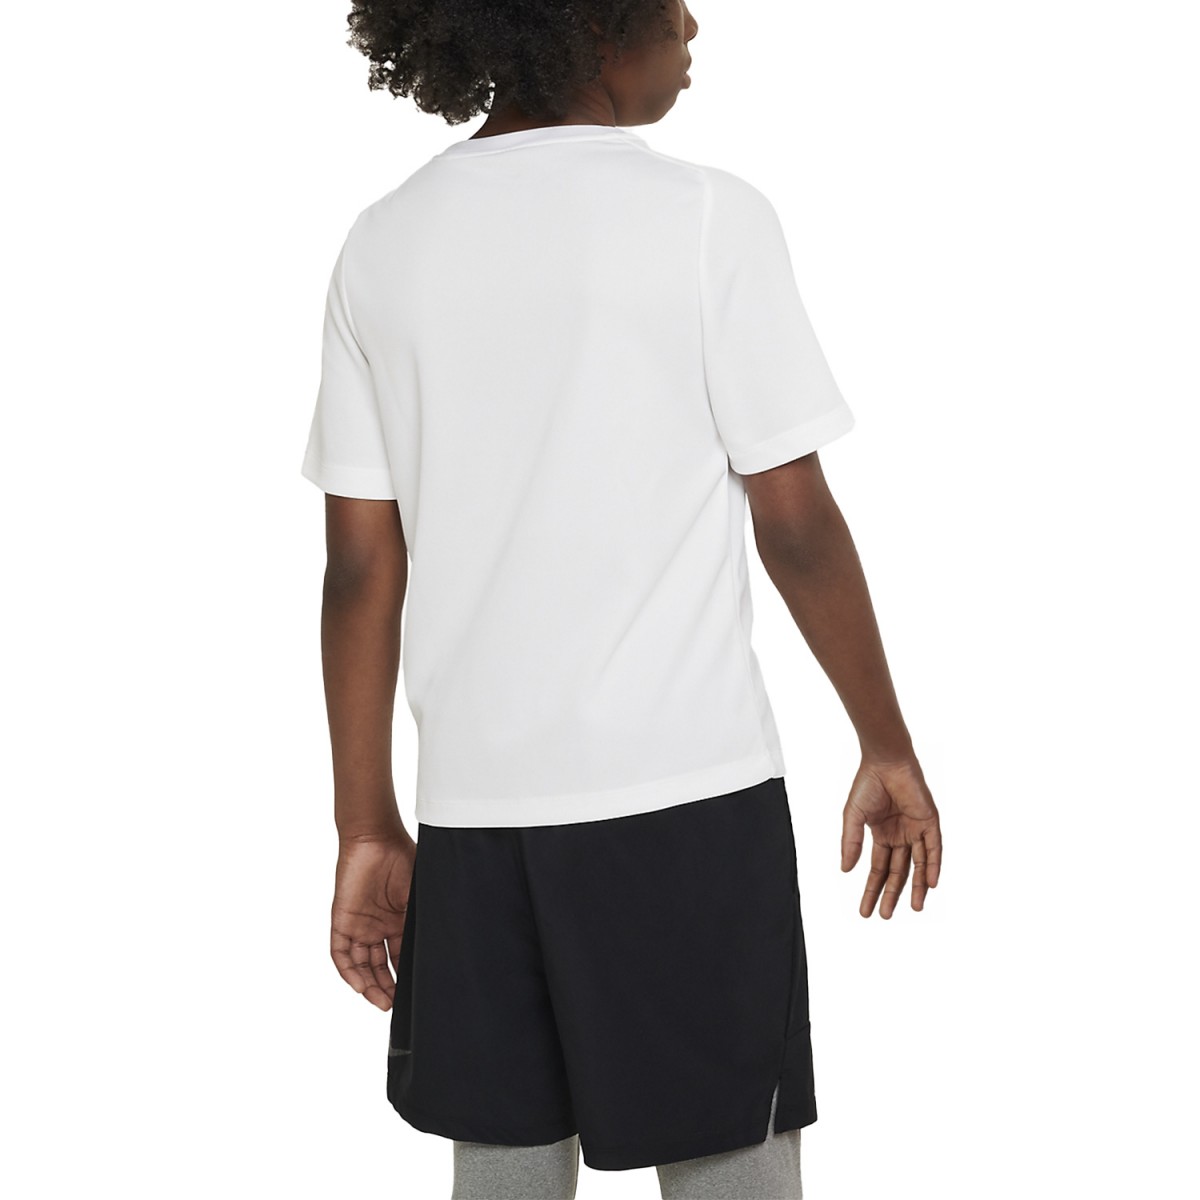 Теннисная футболка детская Nike Multi T-Shirt Boy white/black